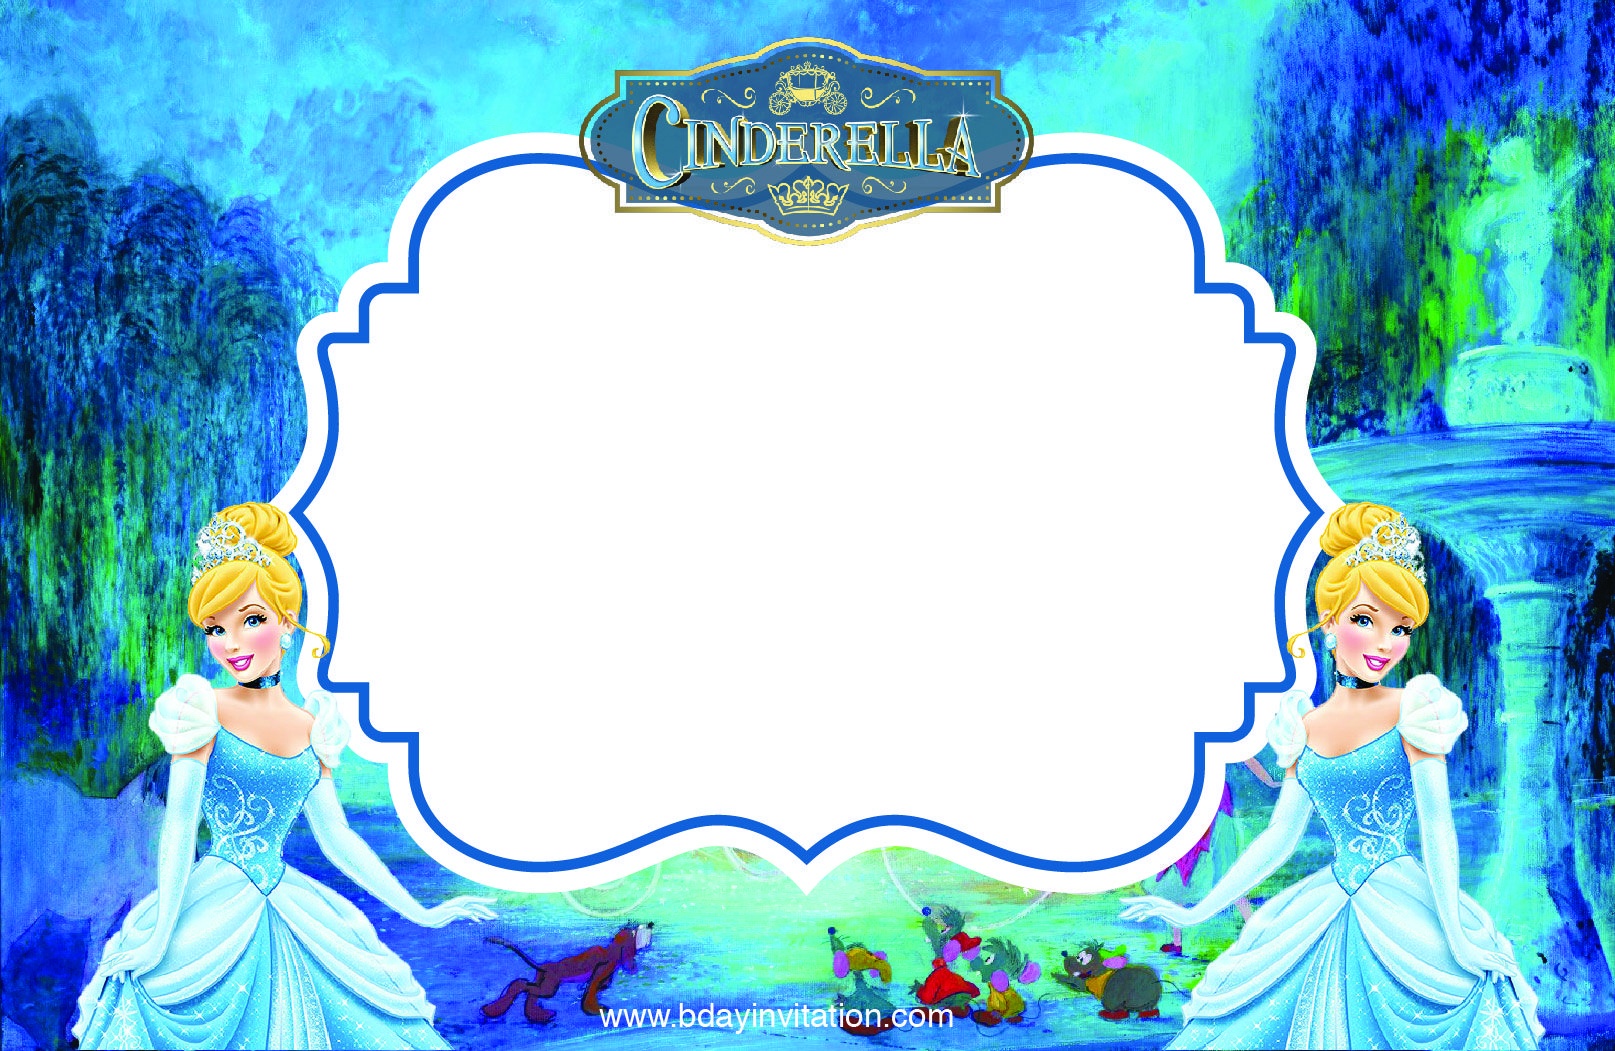 Download Free Printable Disney Cinderella Party Invitation Template - Free Printable Disney Invitations